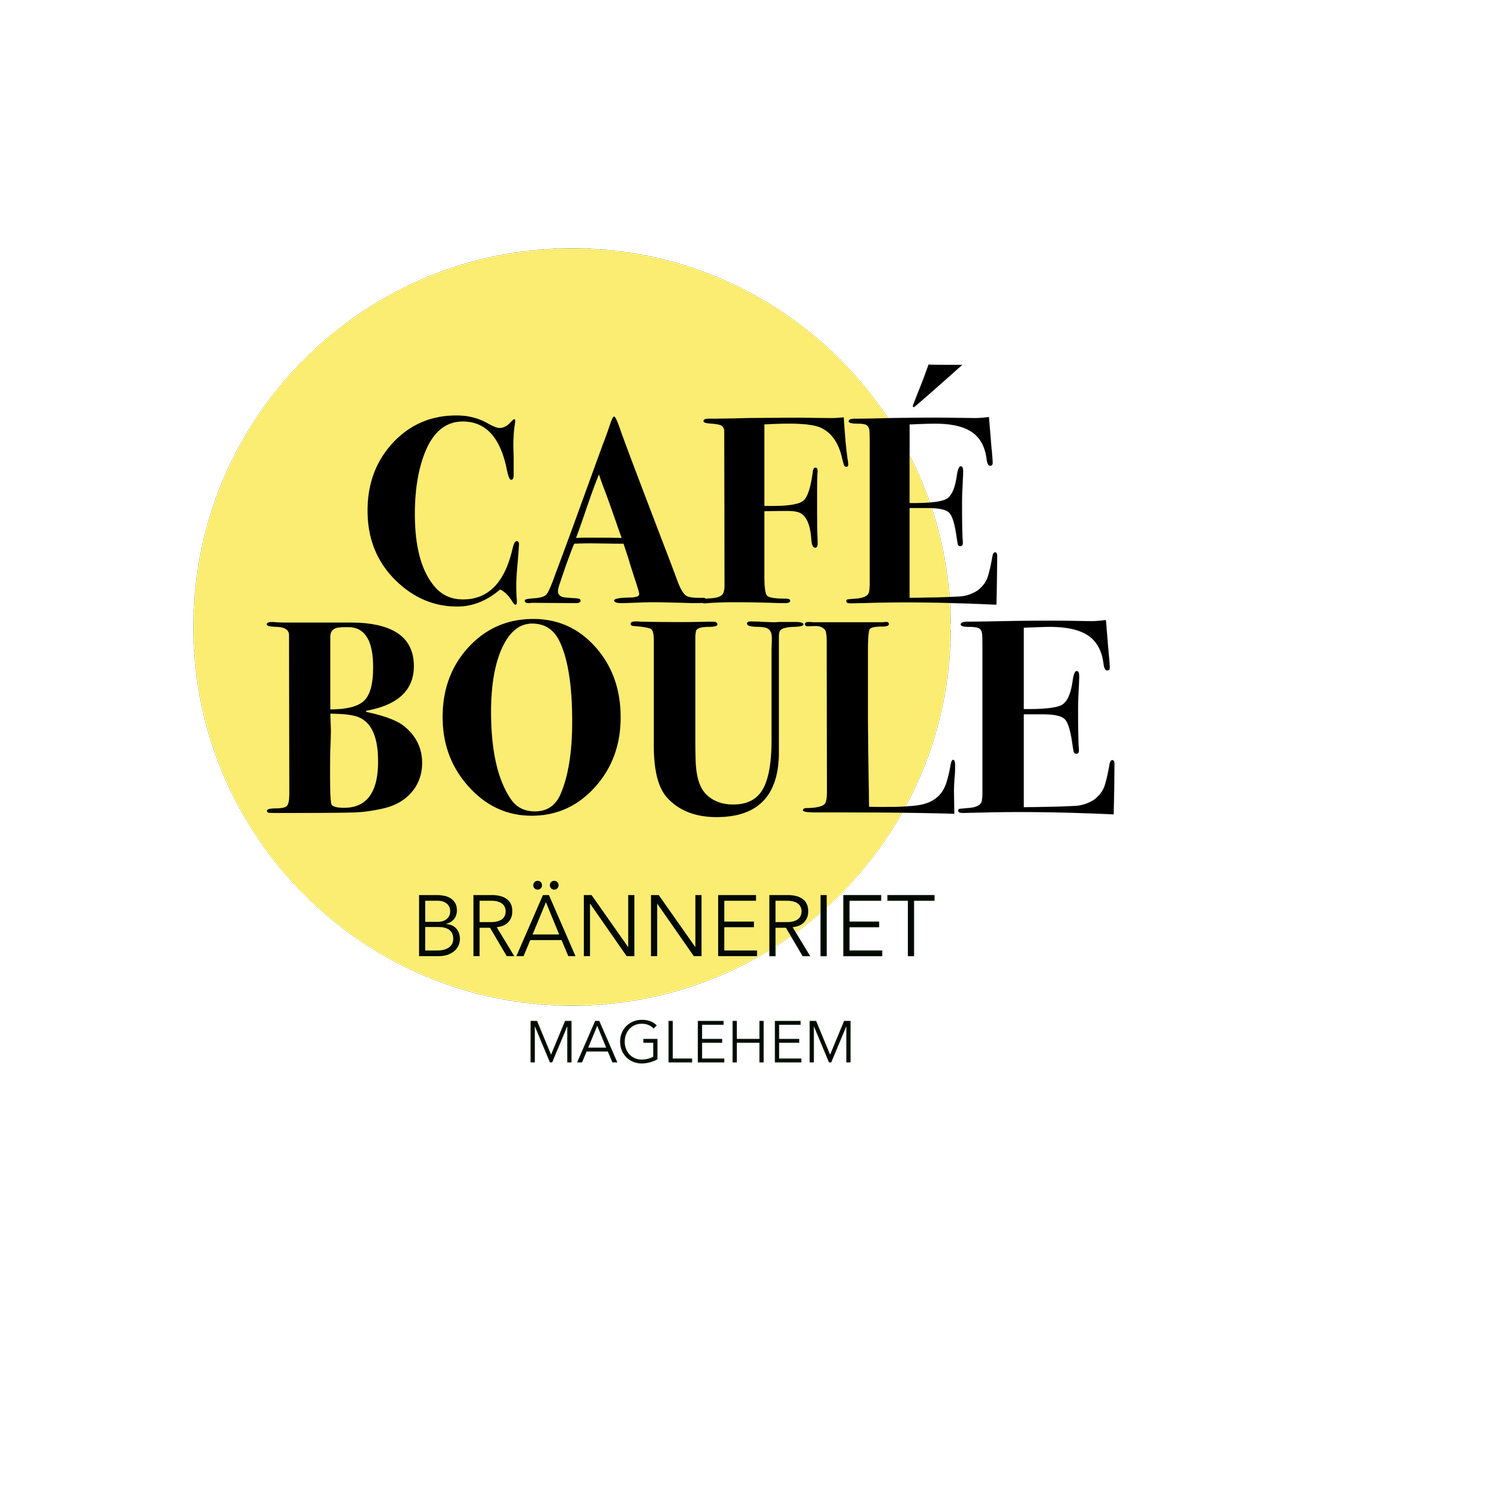 Café Boule Bränneriet Maglehem